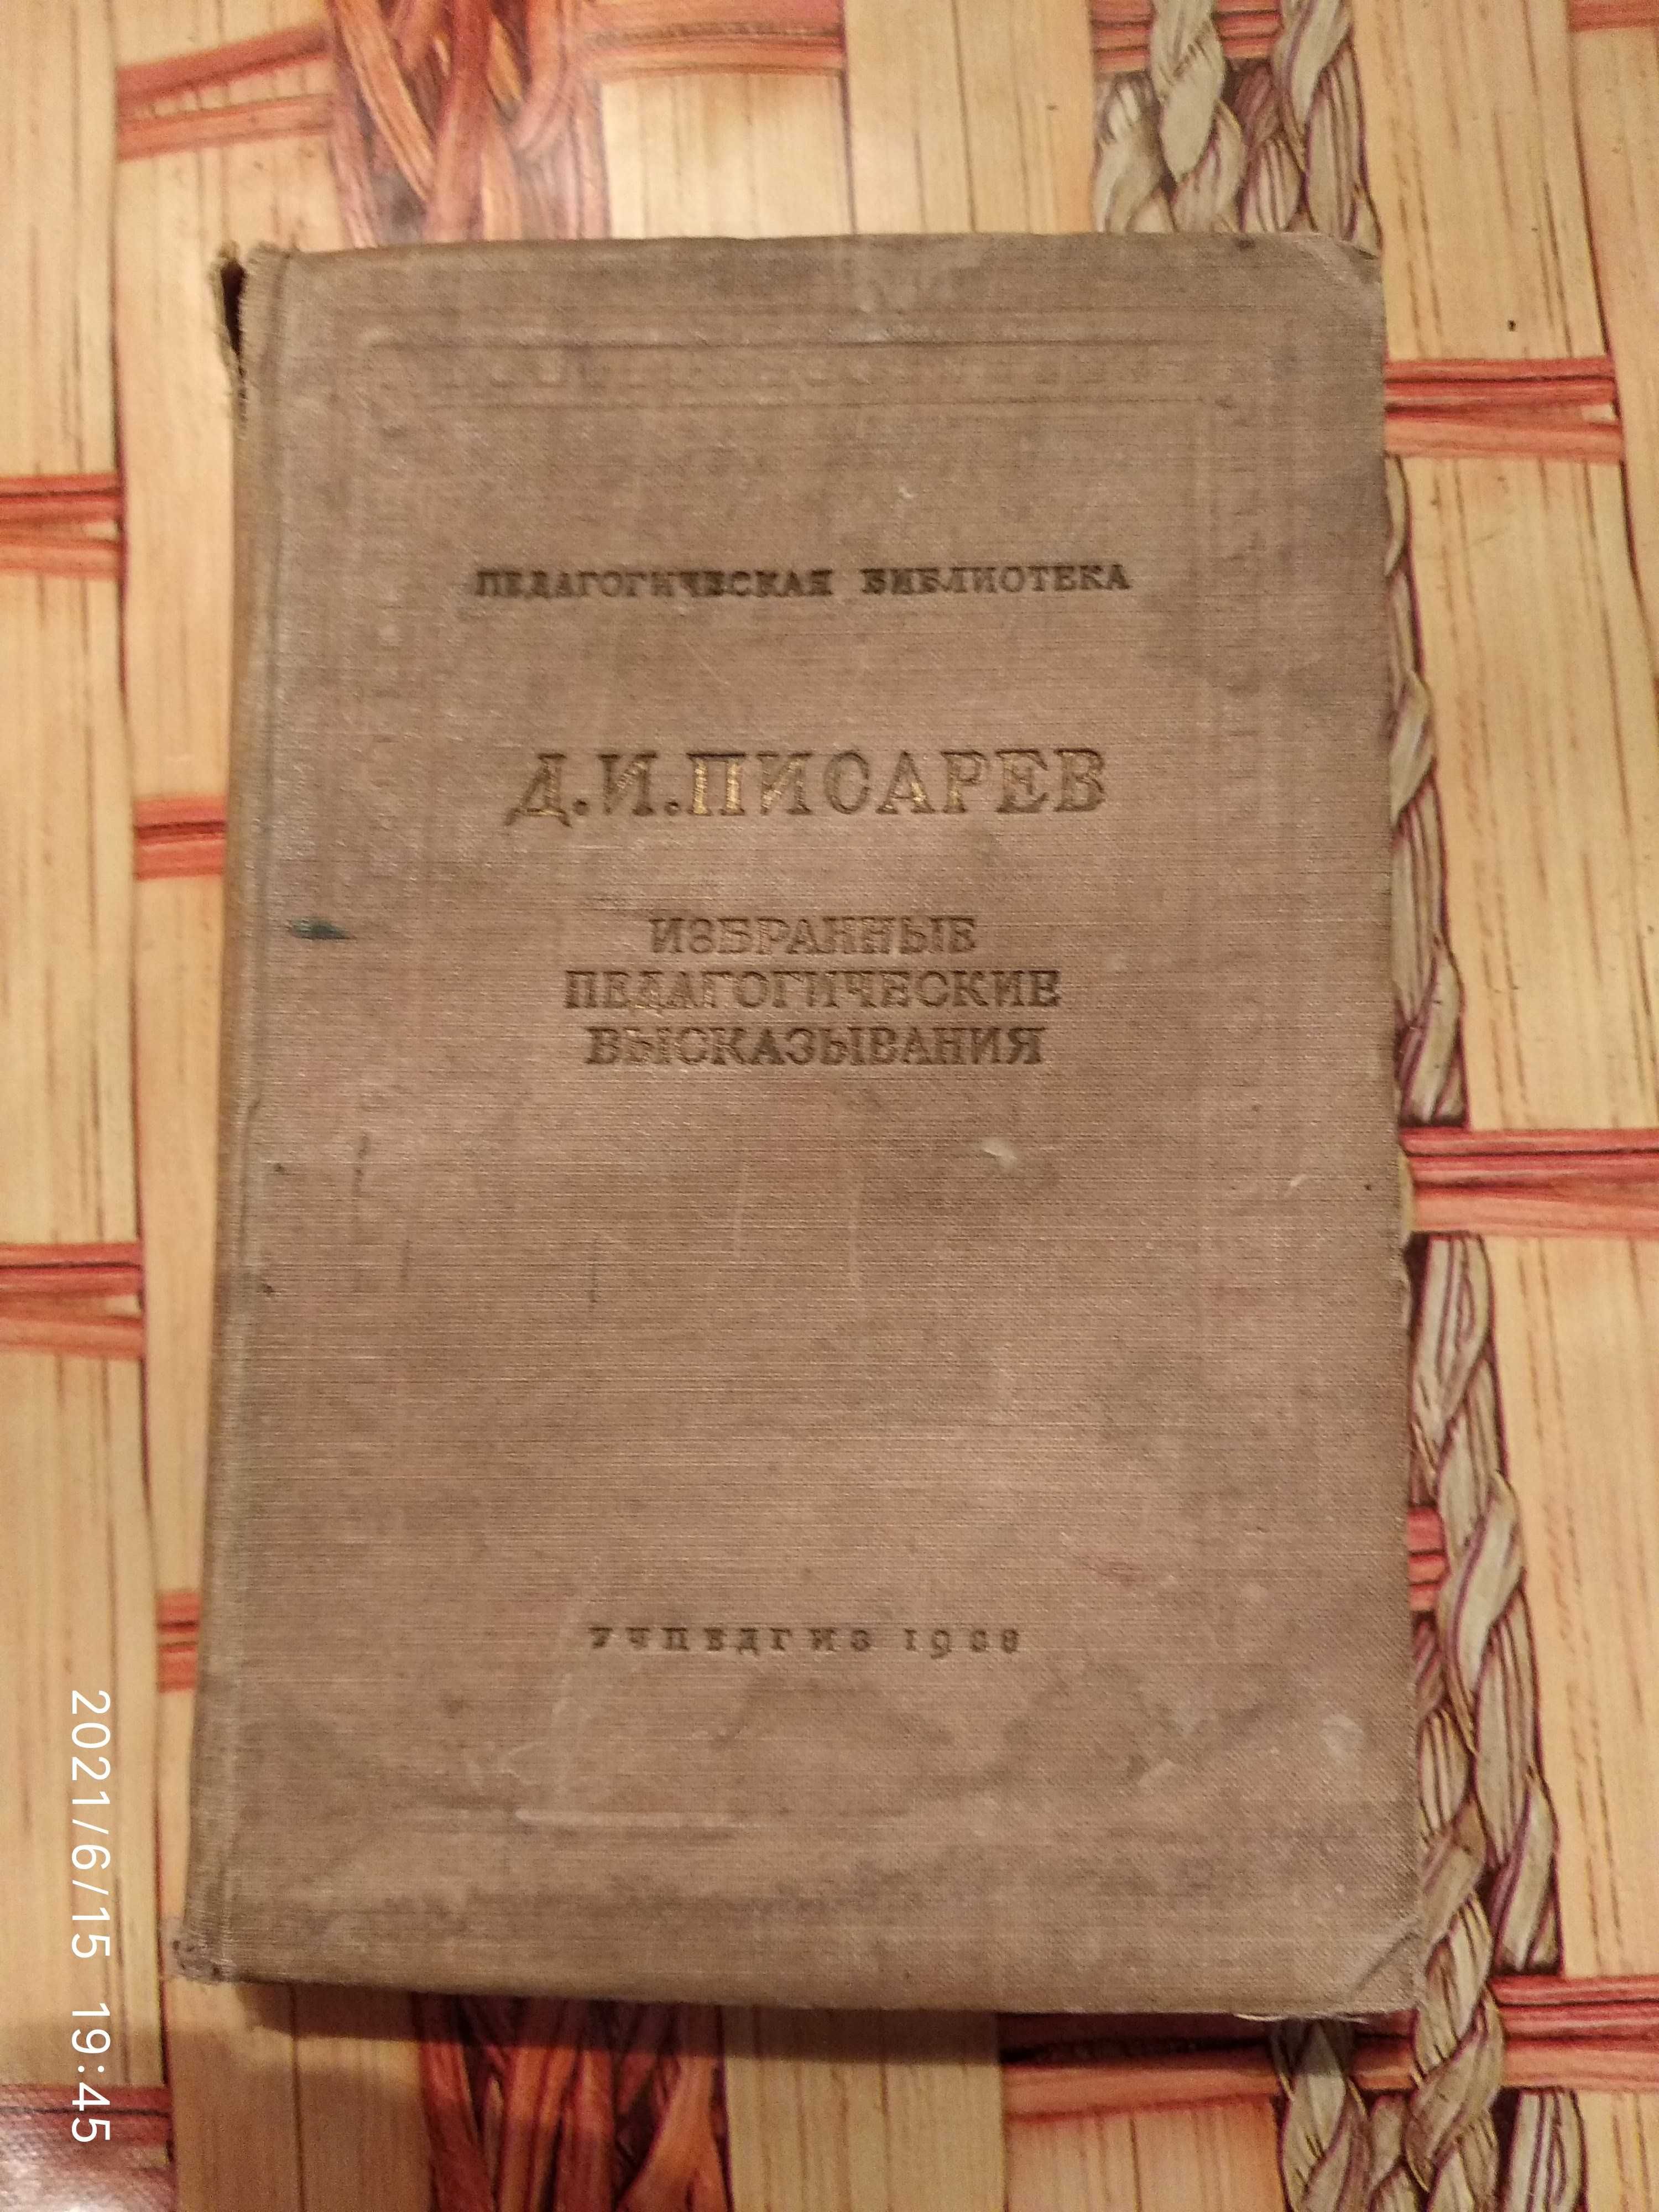 Д.И.Писарев, Избранные педагогические высказывания, 1938 год